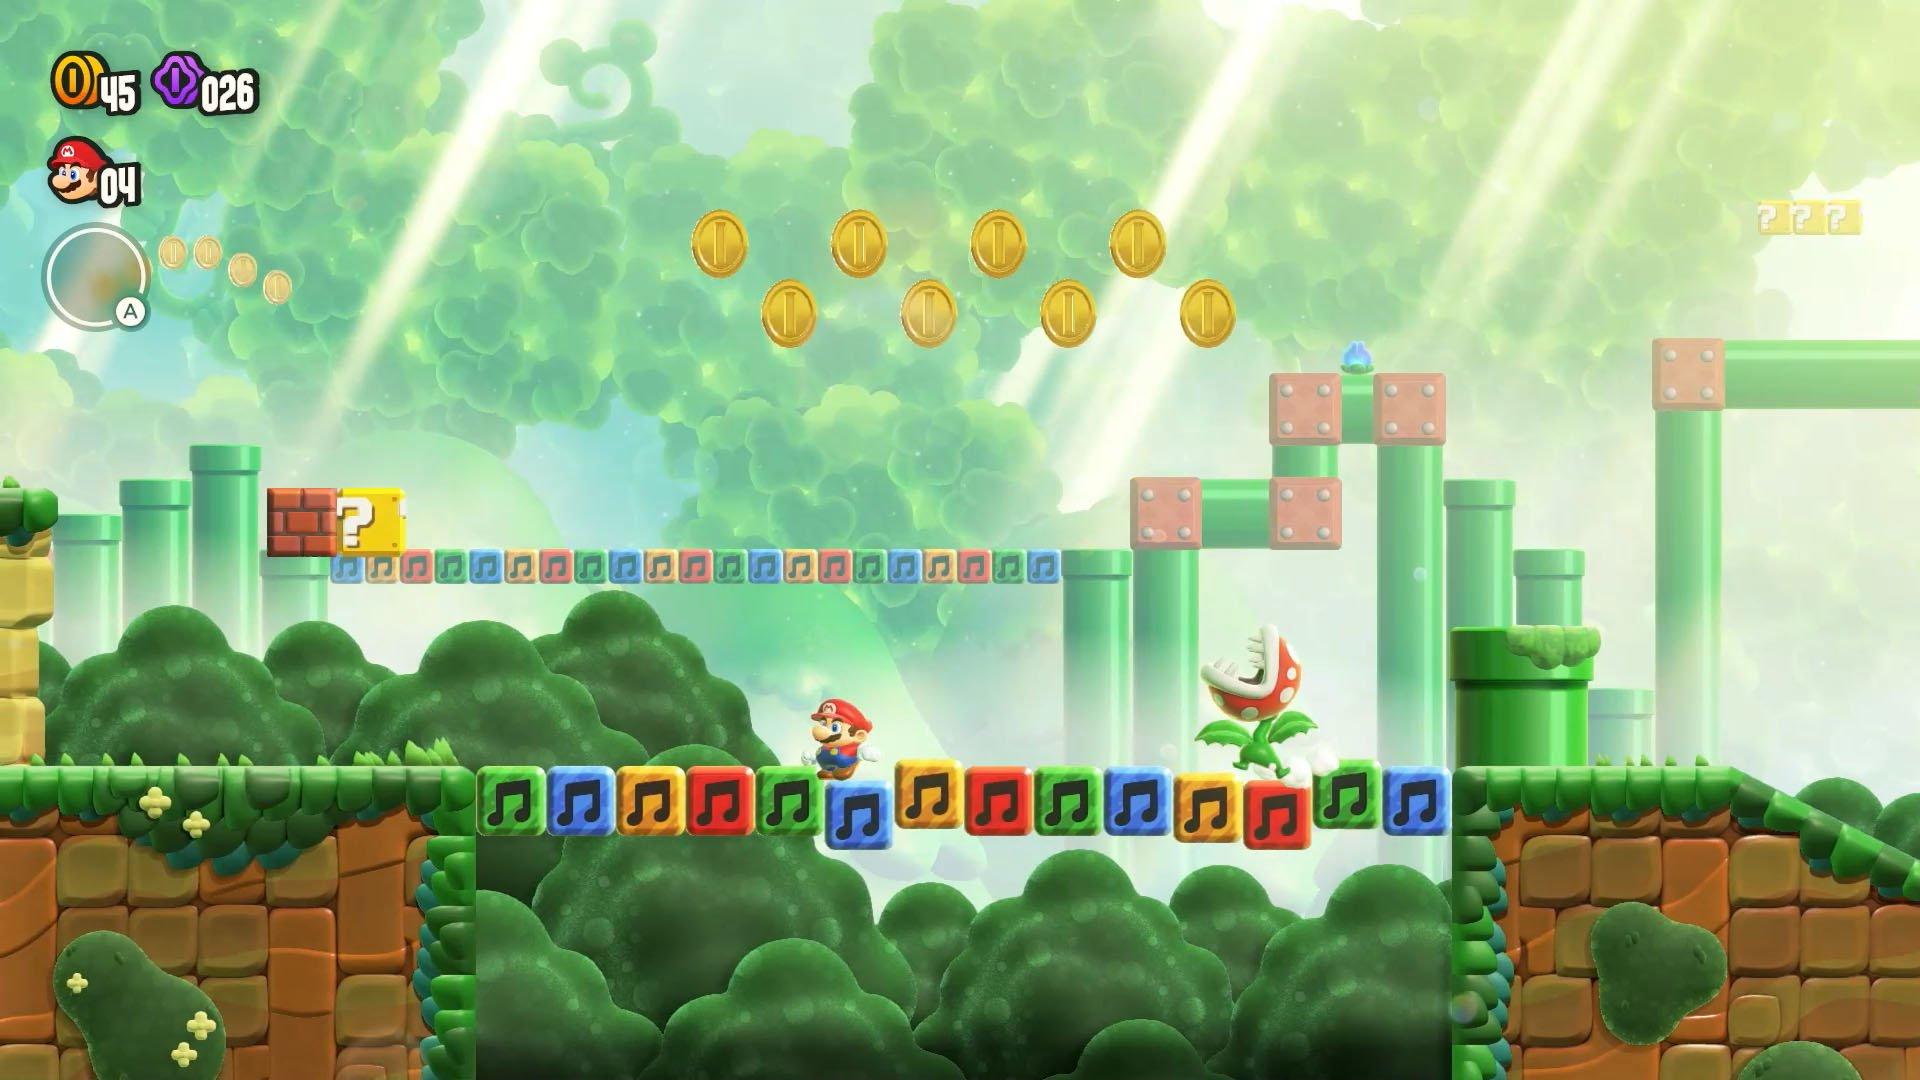 Super Mario Bros. Wonder pre-order: info and pricing - Polygon